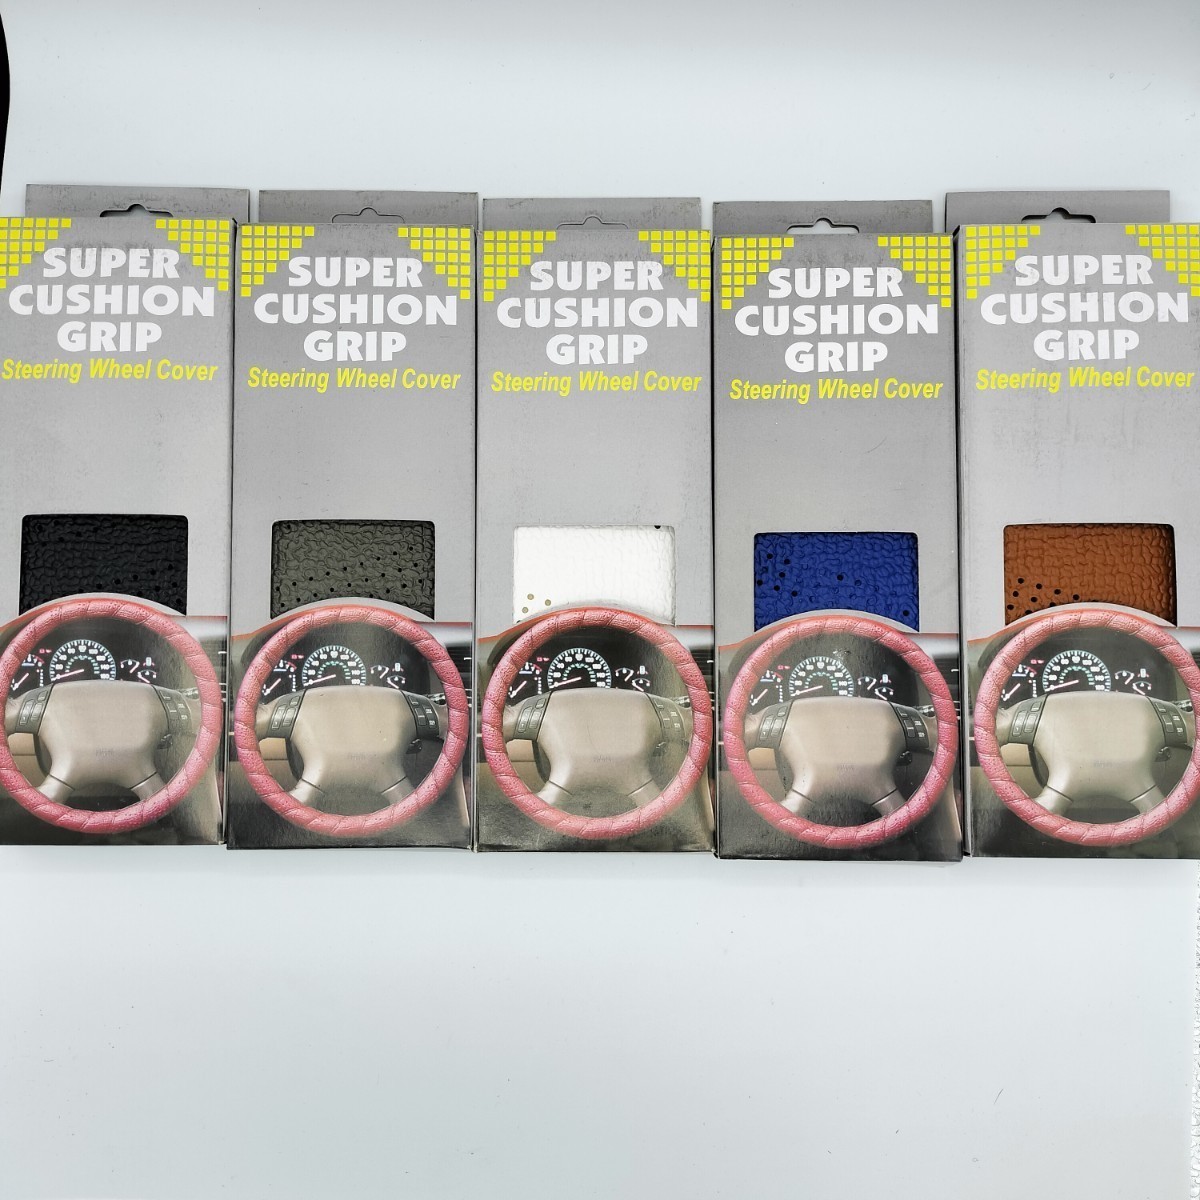 【グレー】SUPER CUSHION GRIP 4mm厚 スポーツグリップ ステアリングカバー ハンドルカバー 巻き付け パワーグリップ USDM 【匿名配送】2_画像6